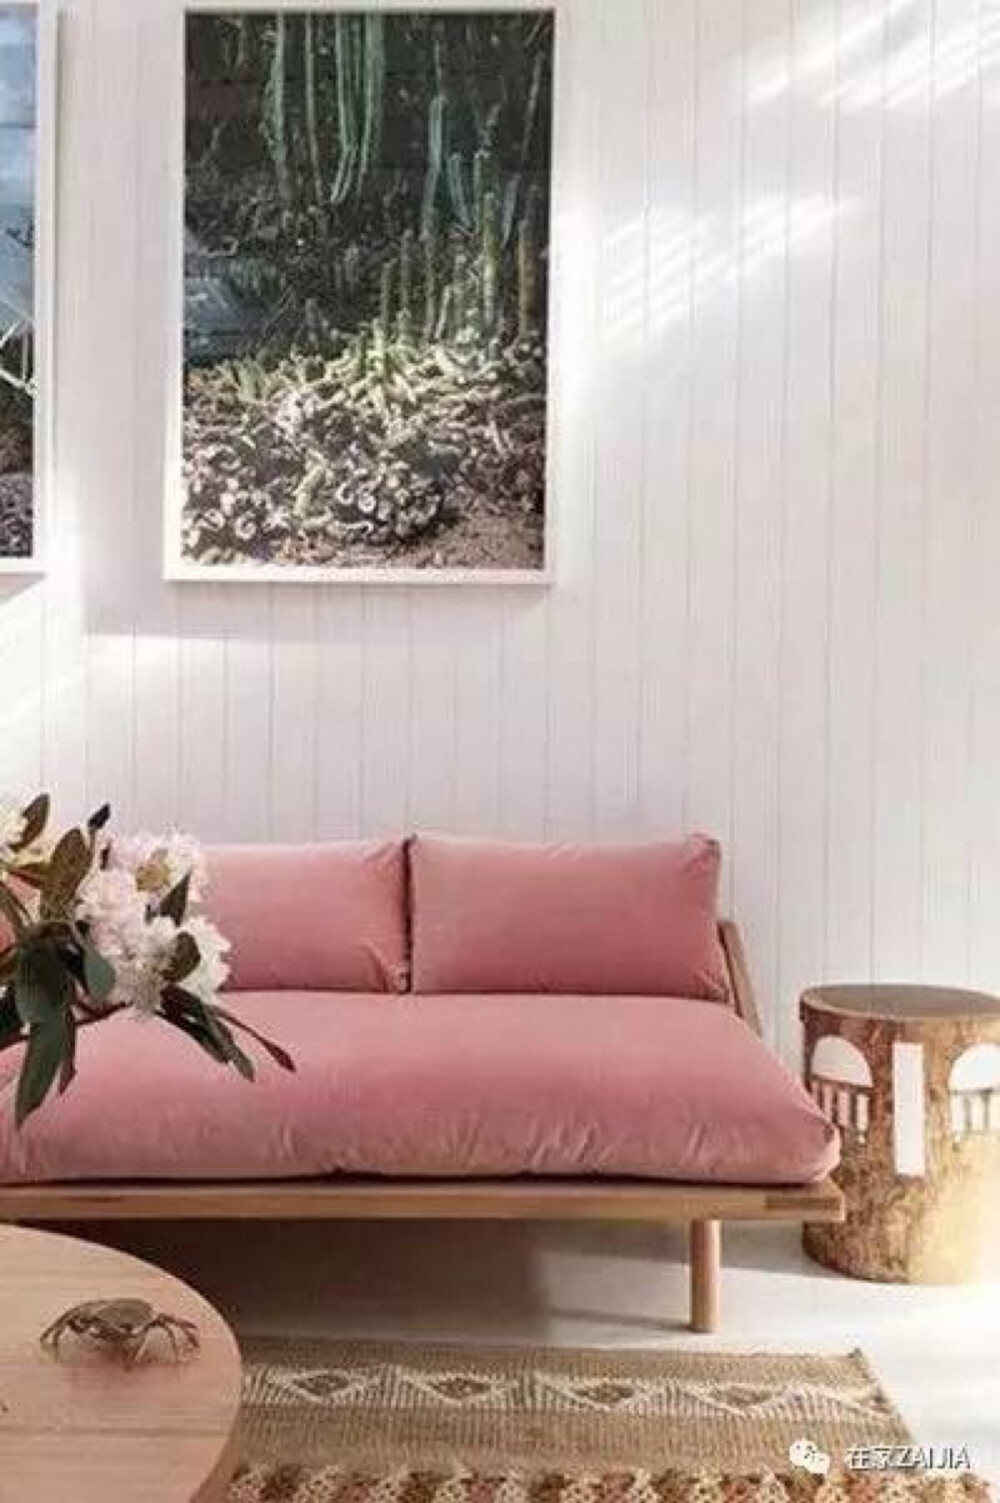 ▲有时候，变换一下家居装饰的材质也可以给自己的家带来新鲜感，比如这个烟粉色的绒面沙发，你喜欢么？